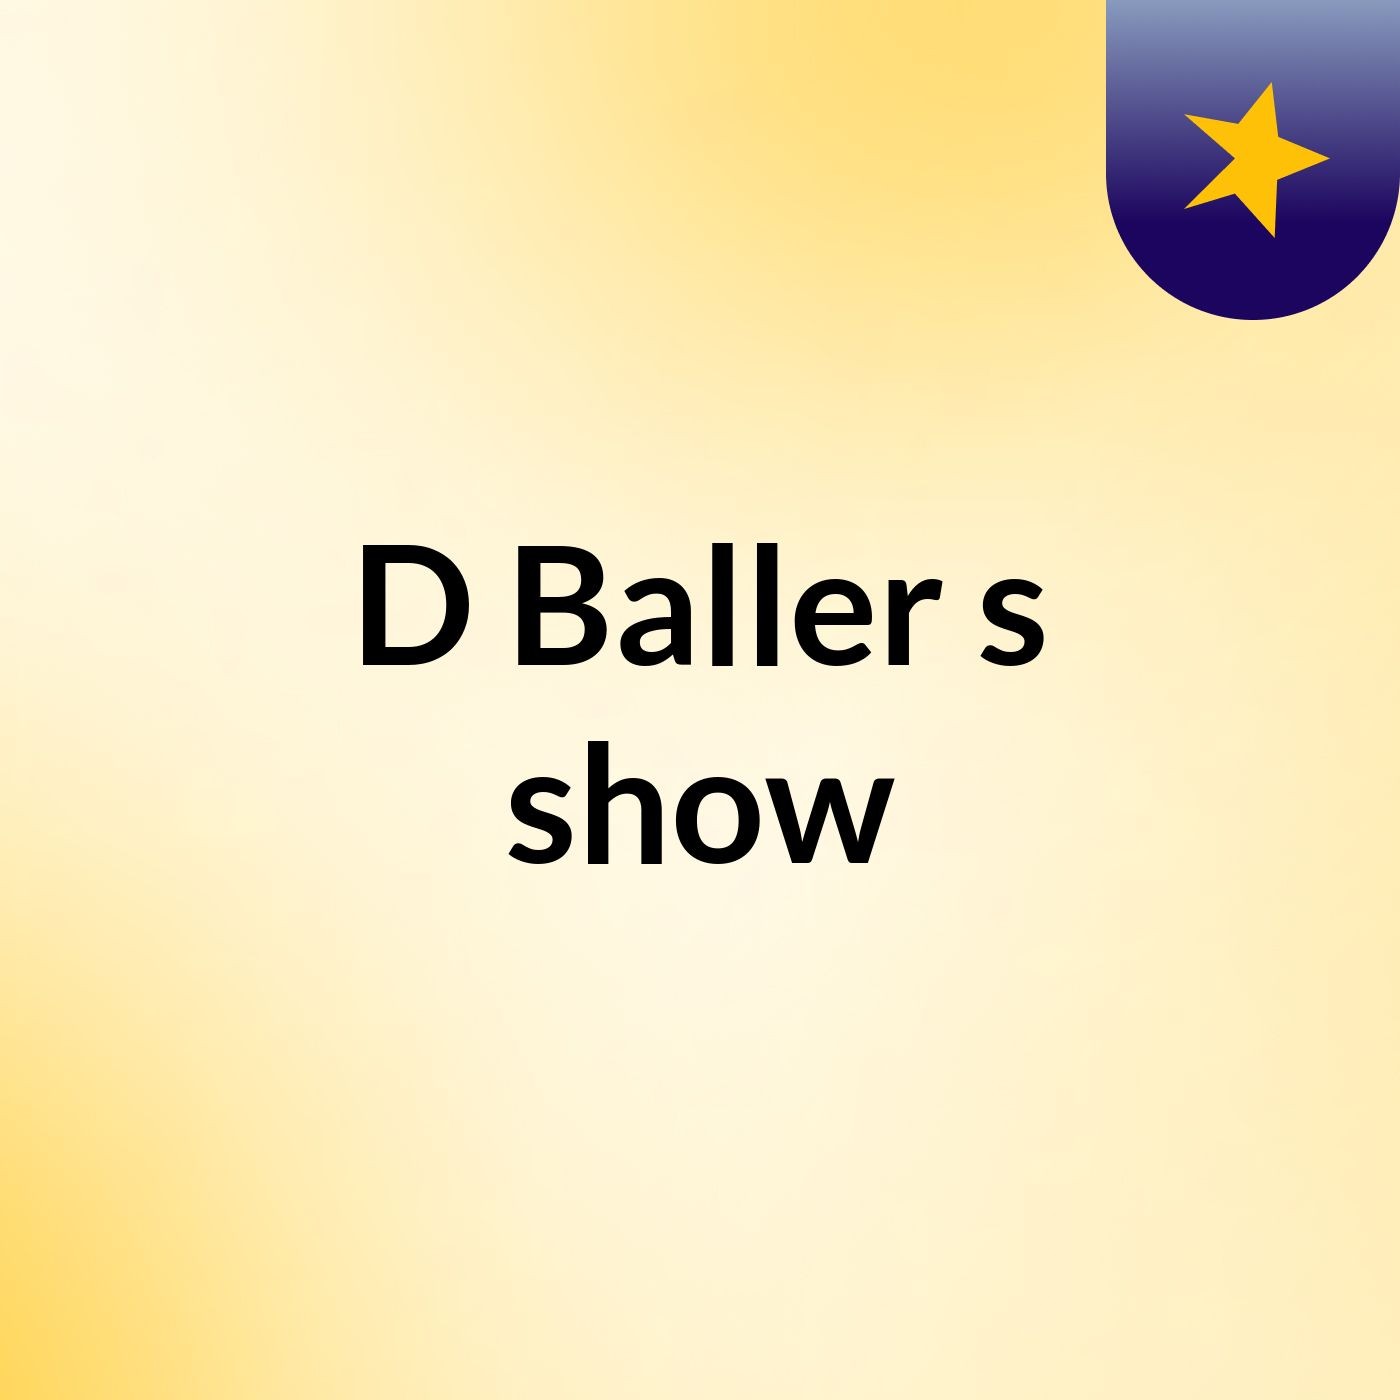 D Baller's show